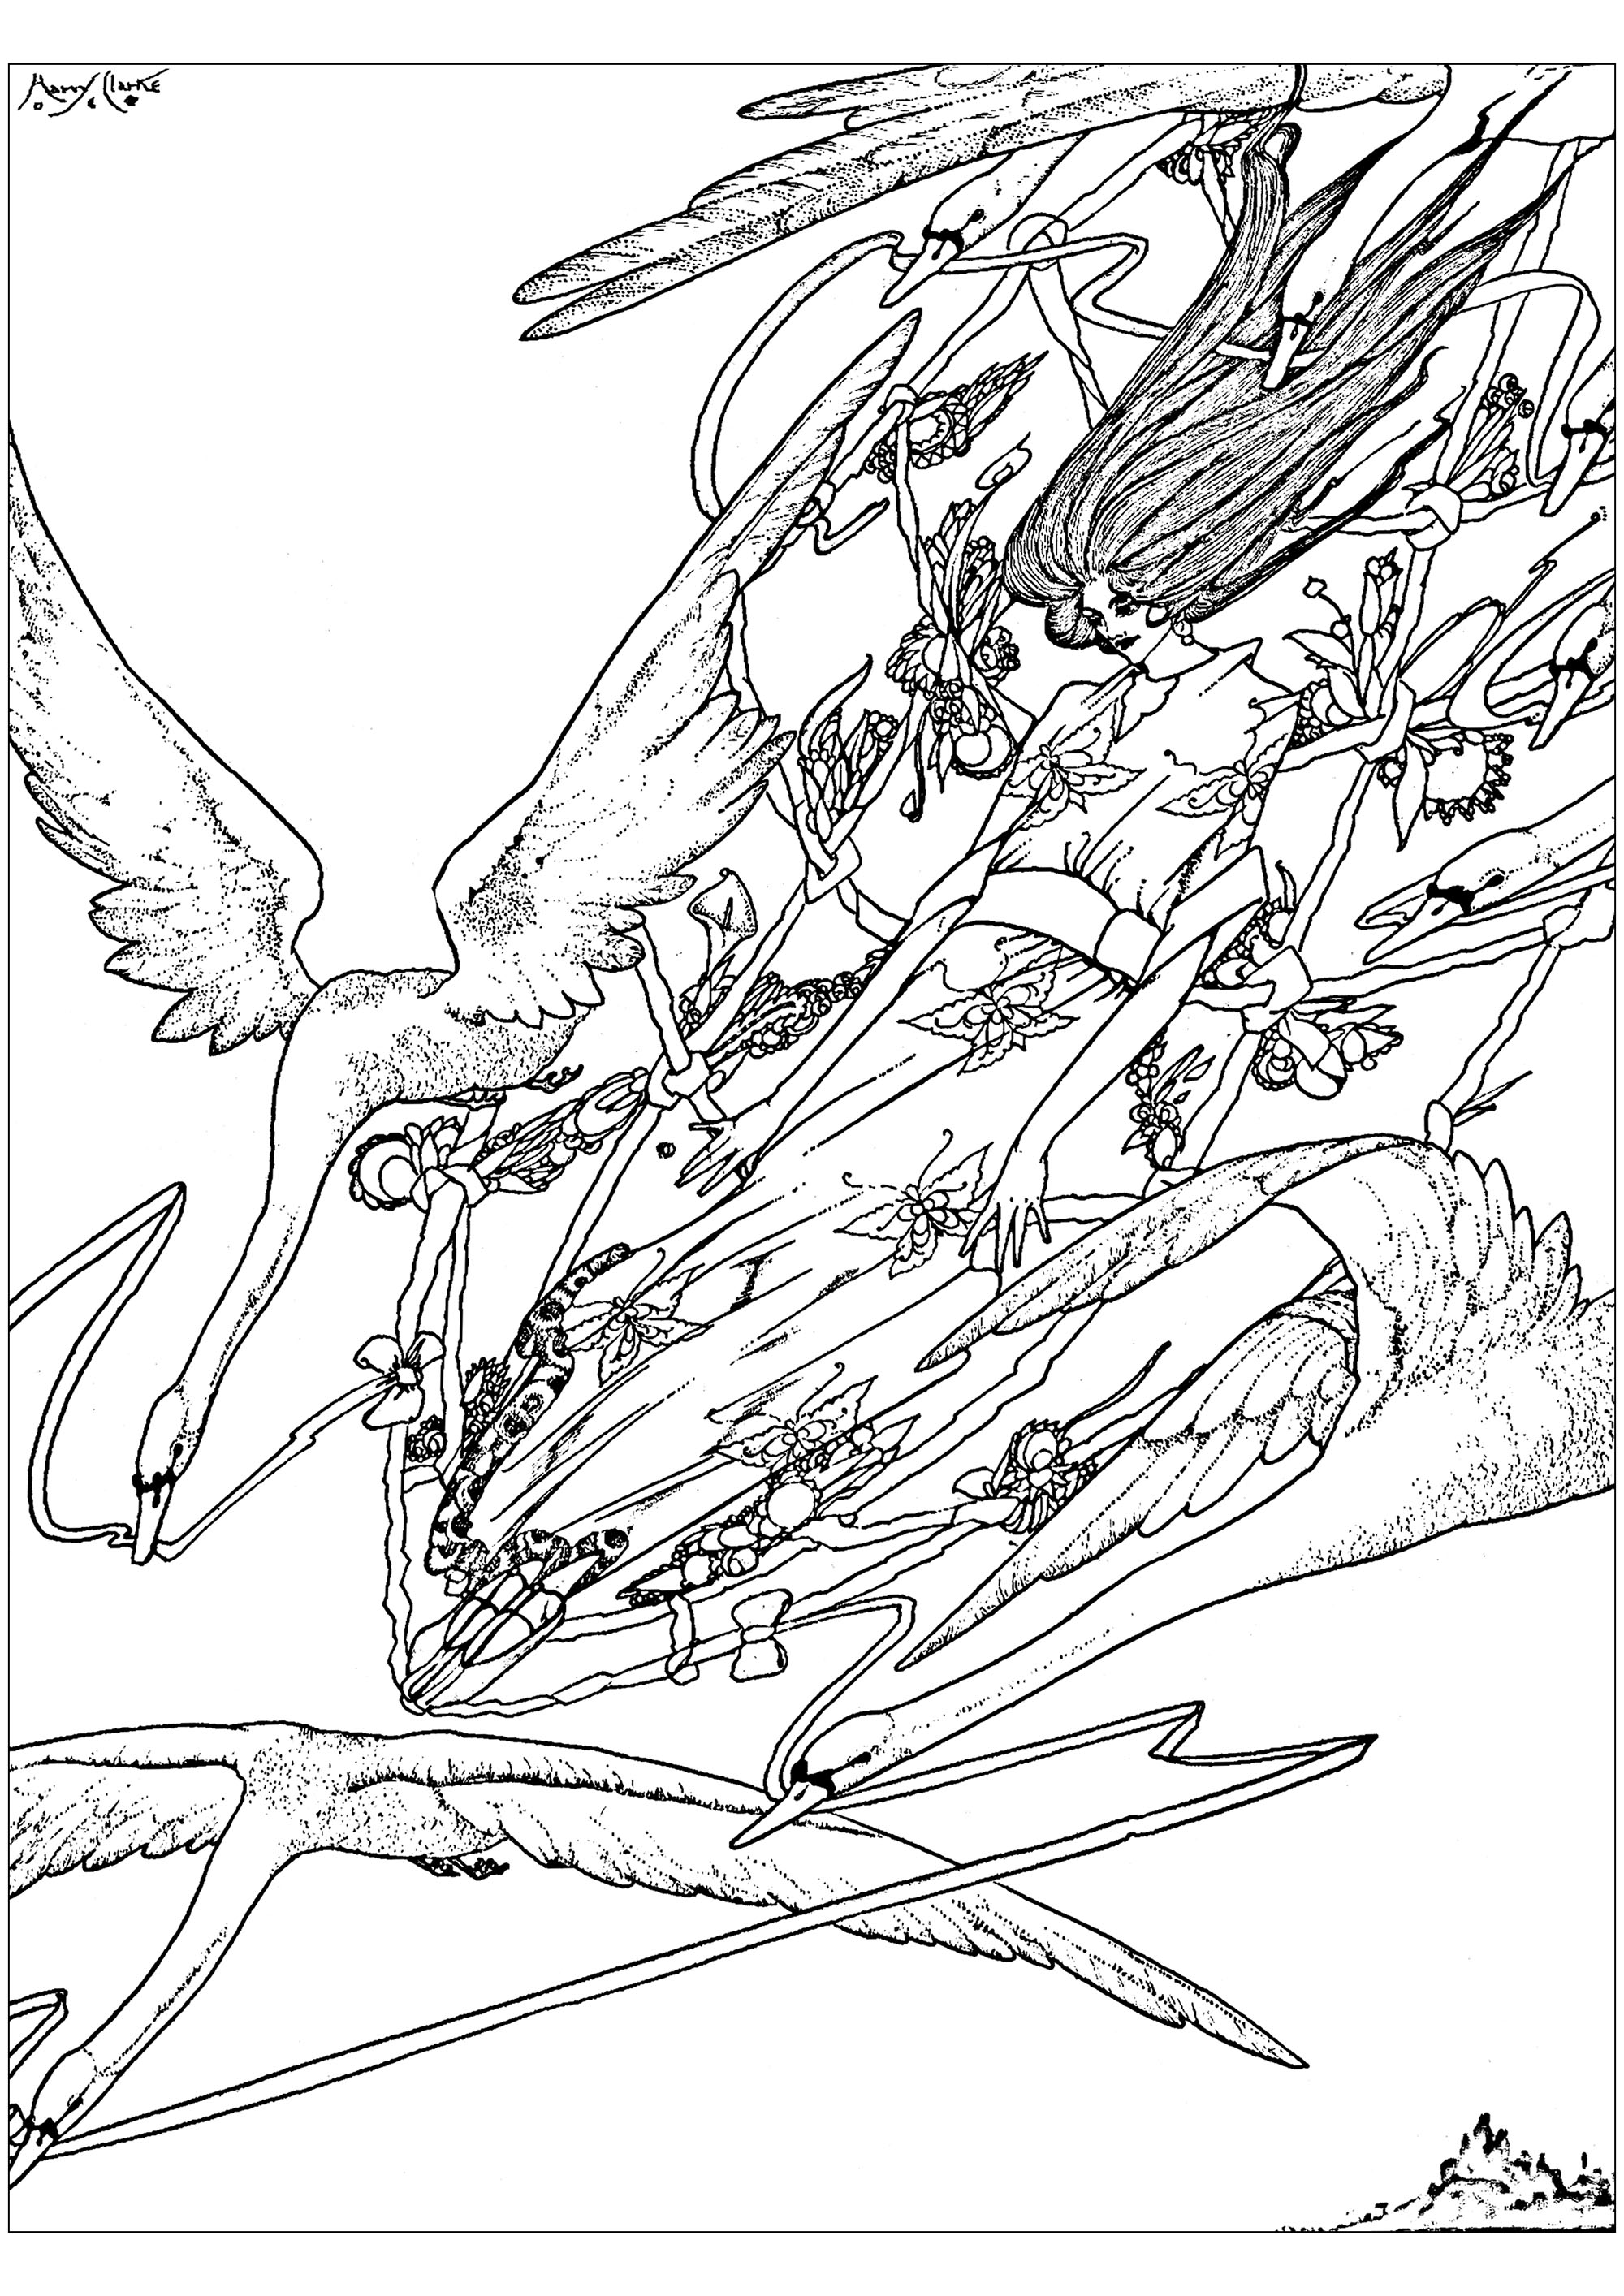 Coloração criada a partir de uma ilustração de Harry Clarke, de 1916, para ilustrar 'Os Gansos Selvagens', um conto de fadas de Hans Christian Andersen. Esta obra é inspirada no estilo Arts and Crafts.